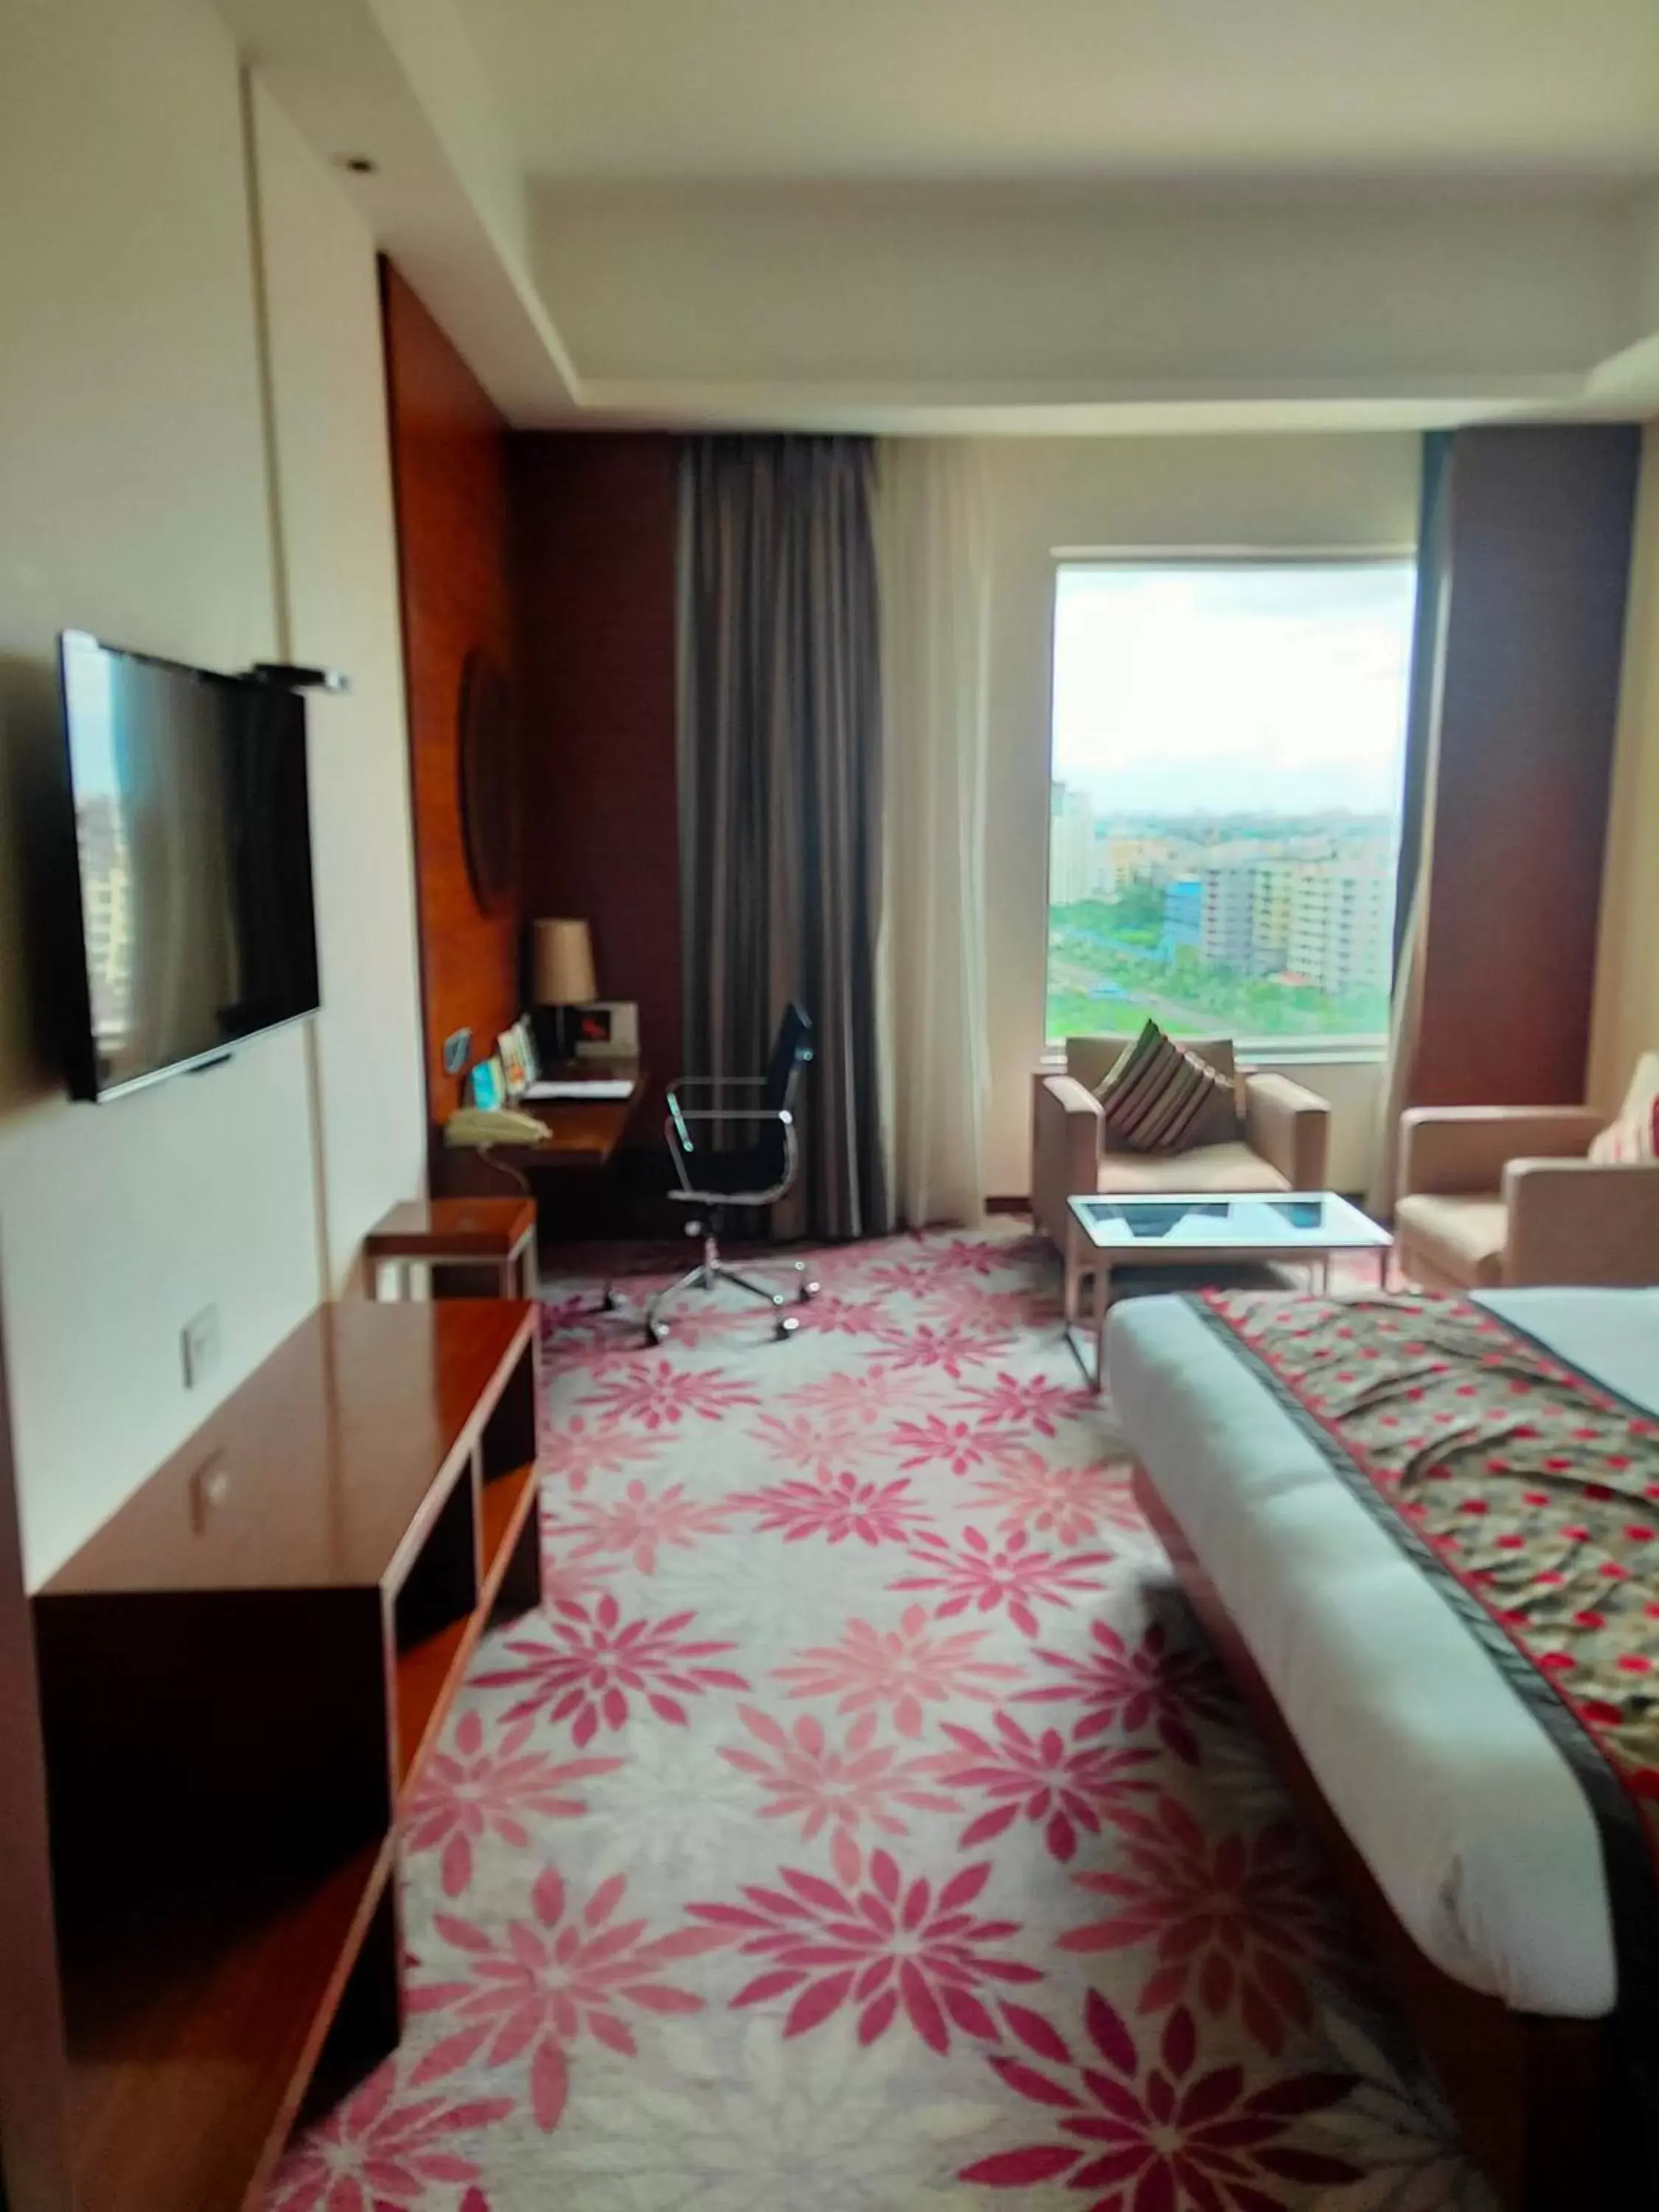 Bedroom, TV/Entertainment Center in Pride Plaza Hotel, Kolkata